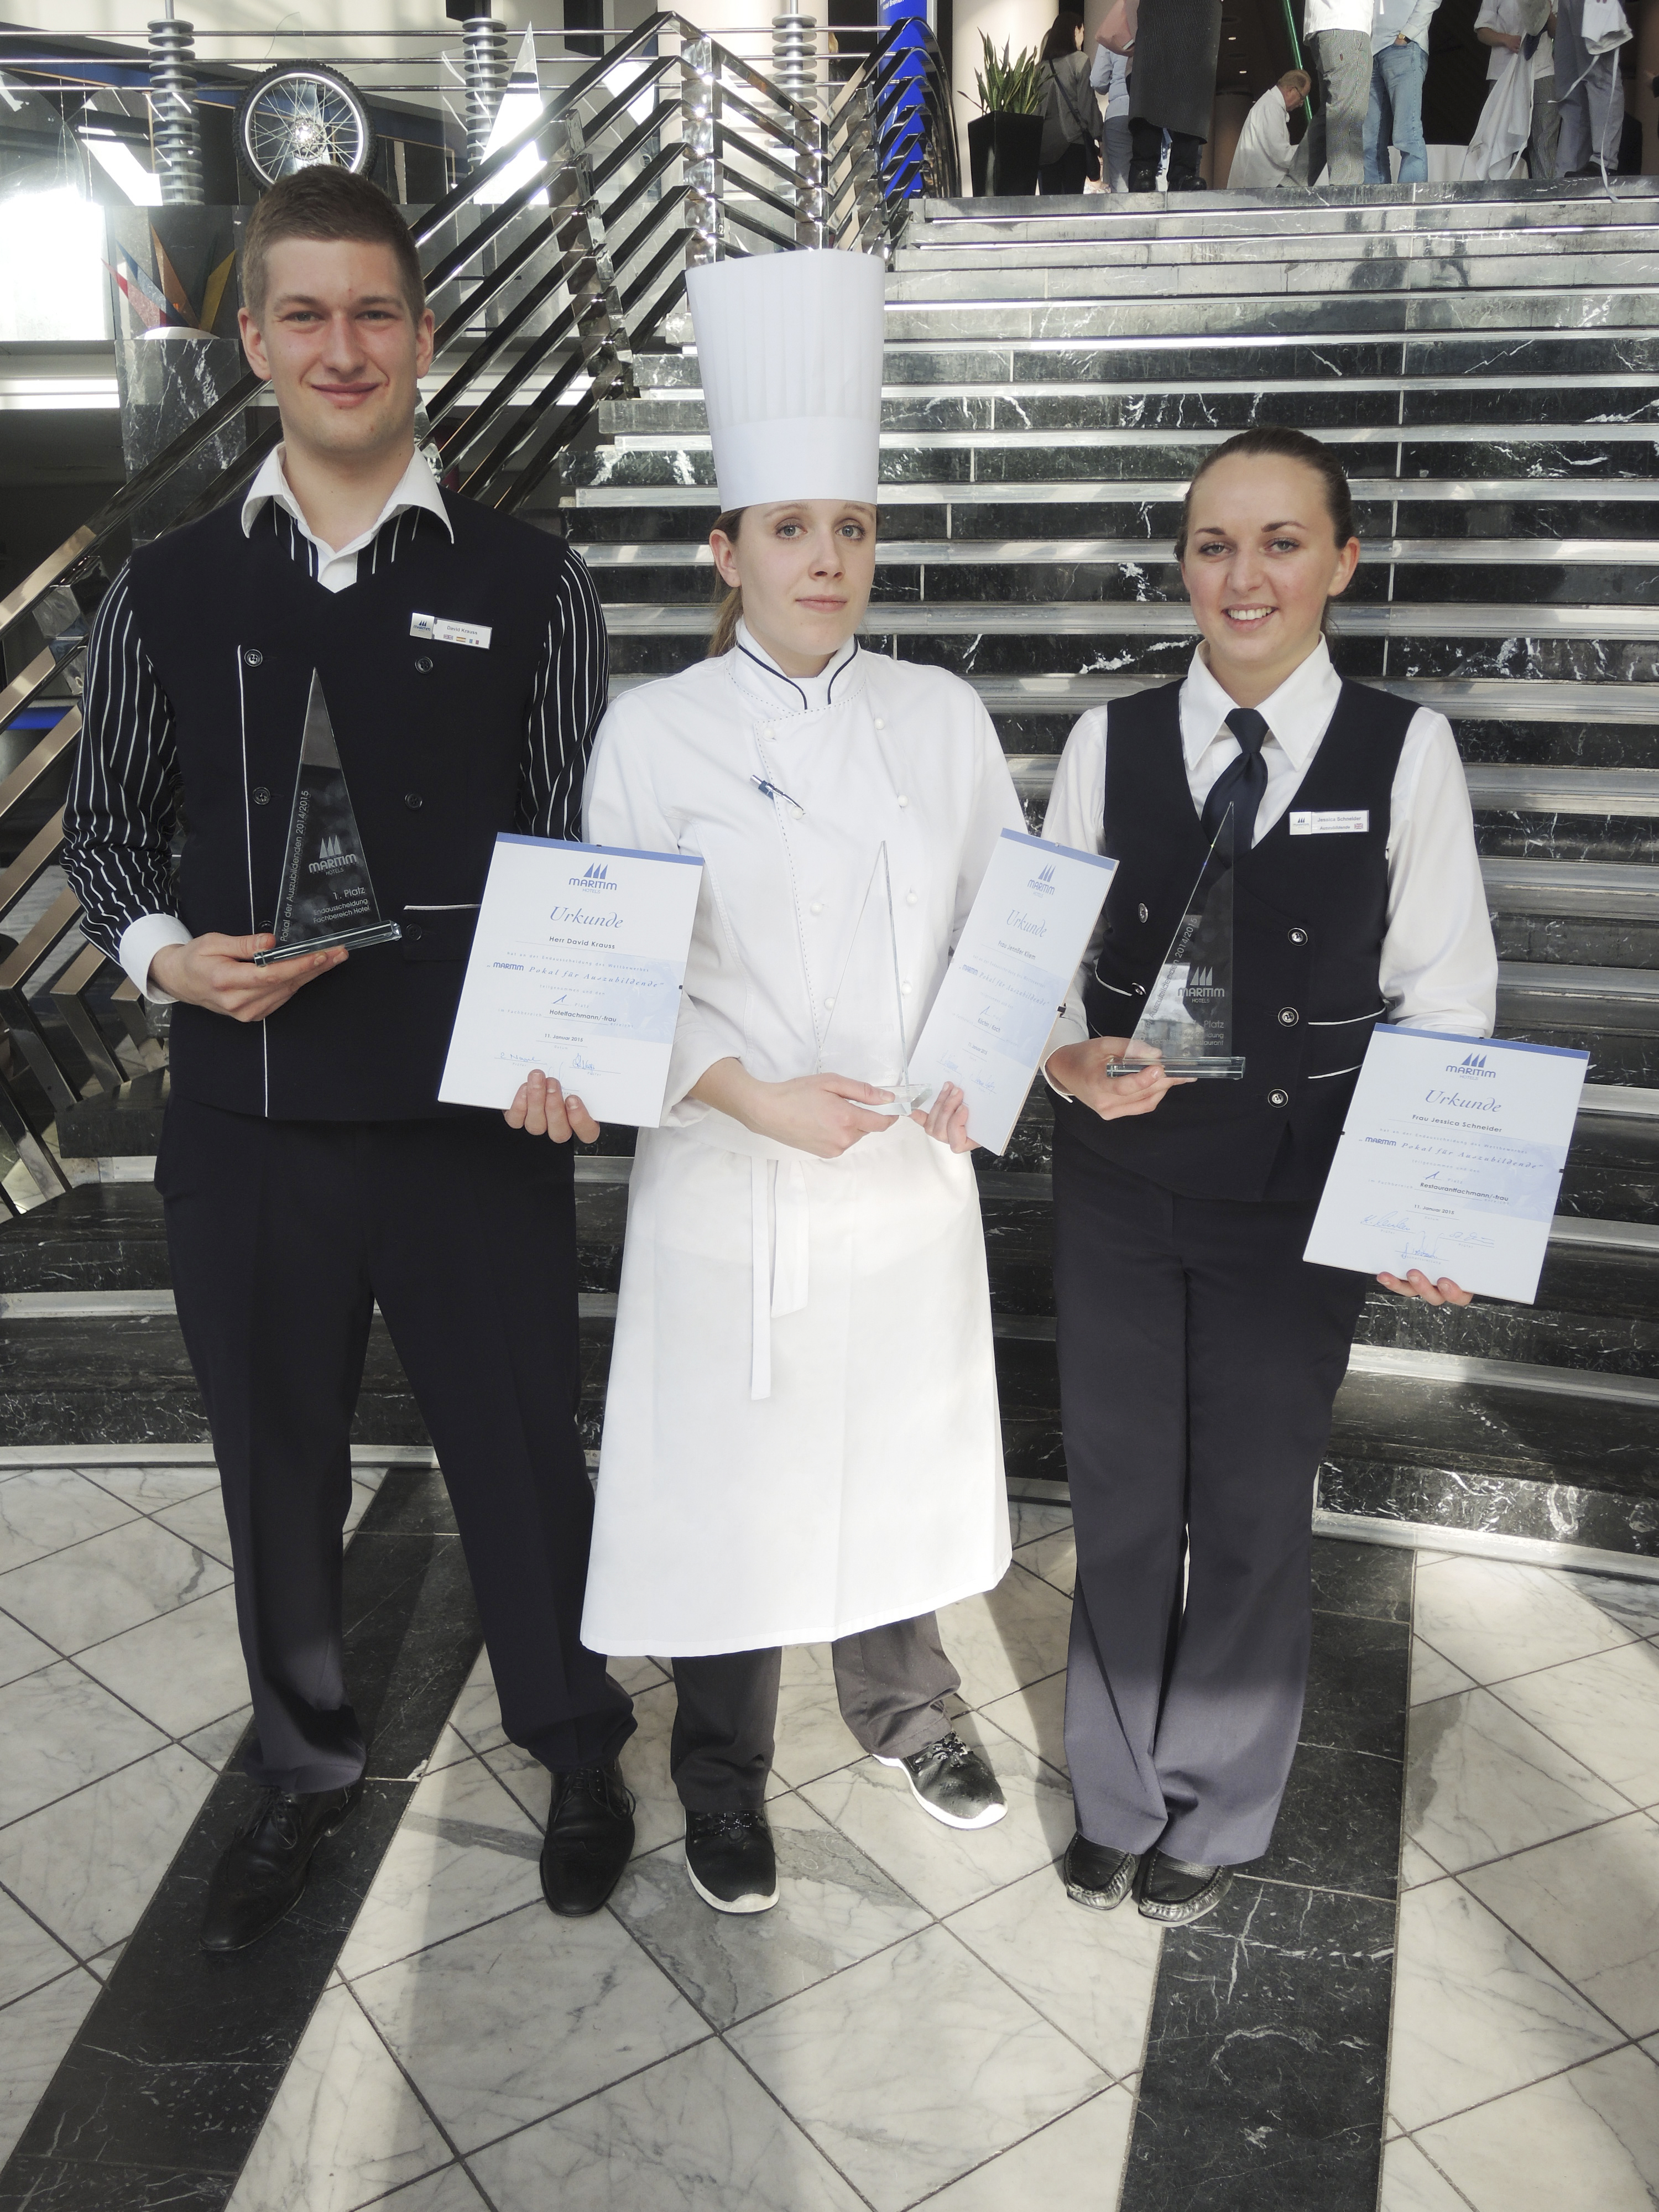 Gewinner Maritim Azubi Pokal 2015: David Krauss (Maritim Hotel Ulm), Jennifer Kliem (Maritim Hotel Berlin) und Jessica Schneider (Maritim Hotel Stuttgart)